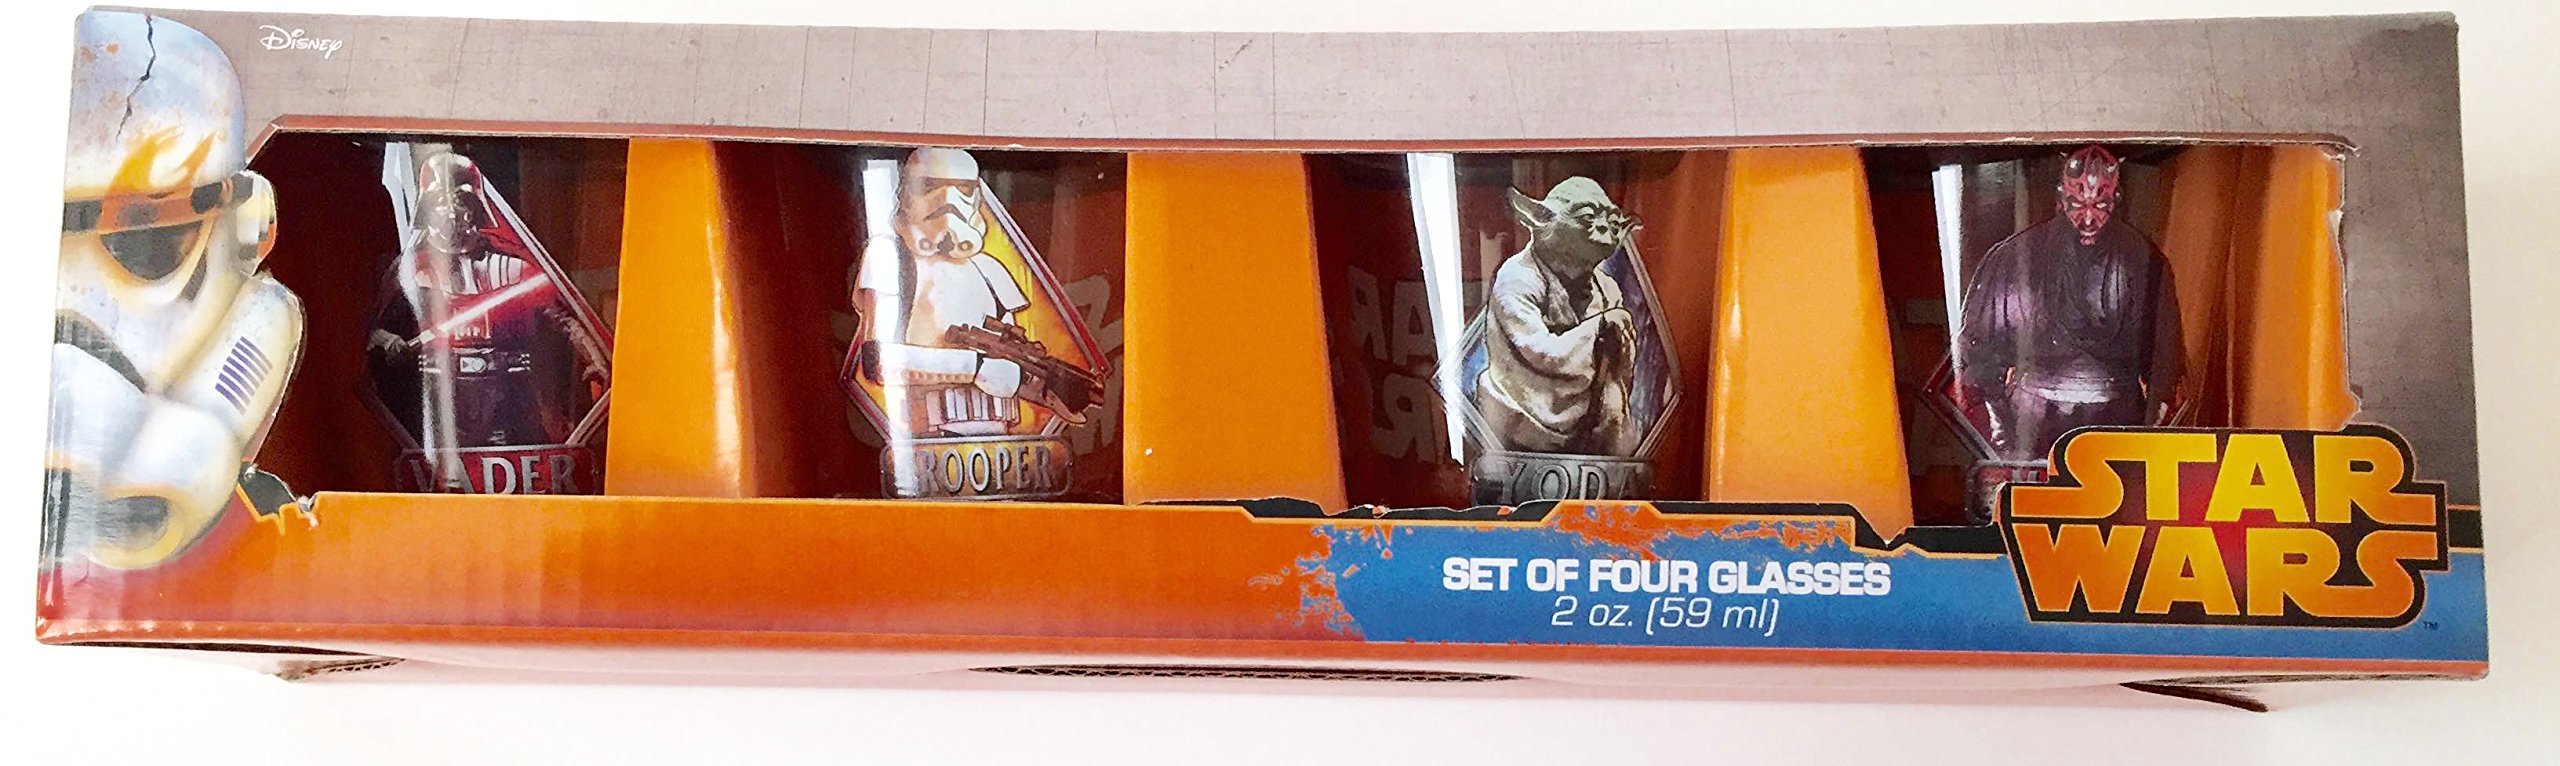 Star Wars Shot Glasses - Set of 4 - Yoda, Vader, Trooper & Maul - 2 Oz Each.